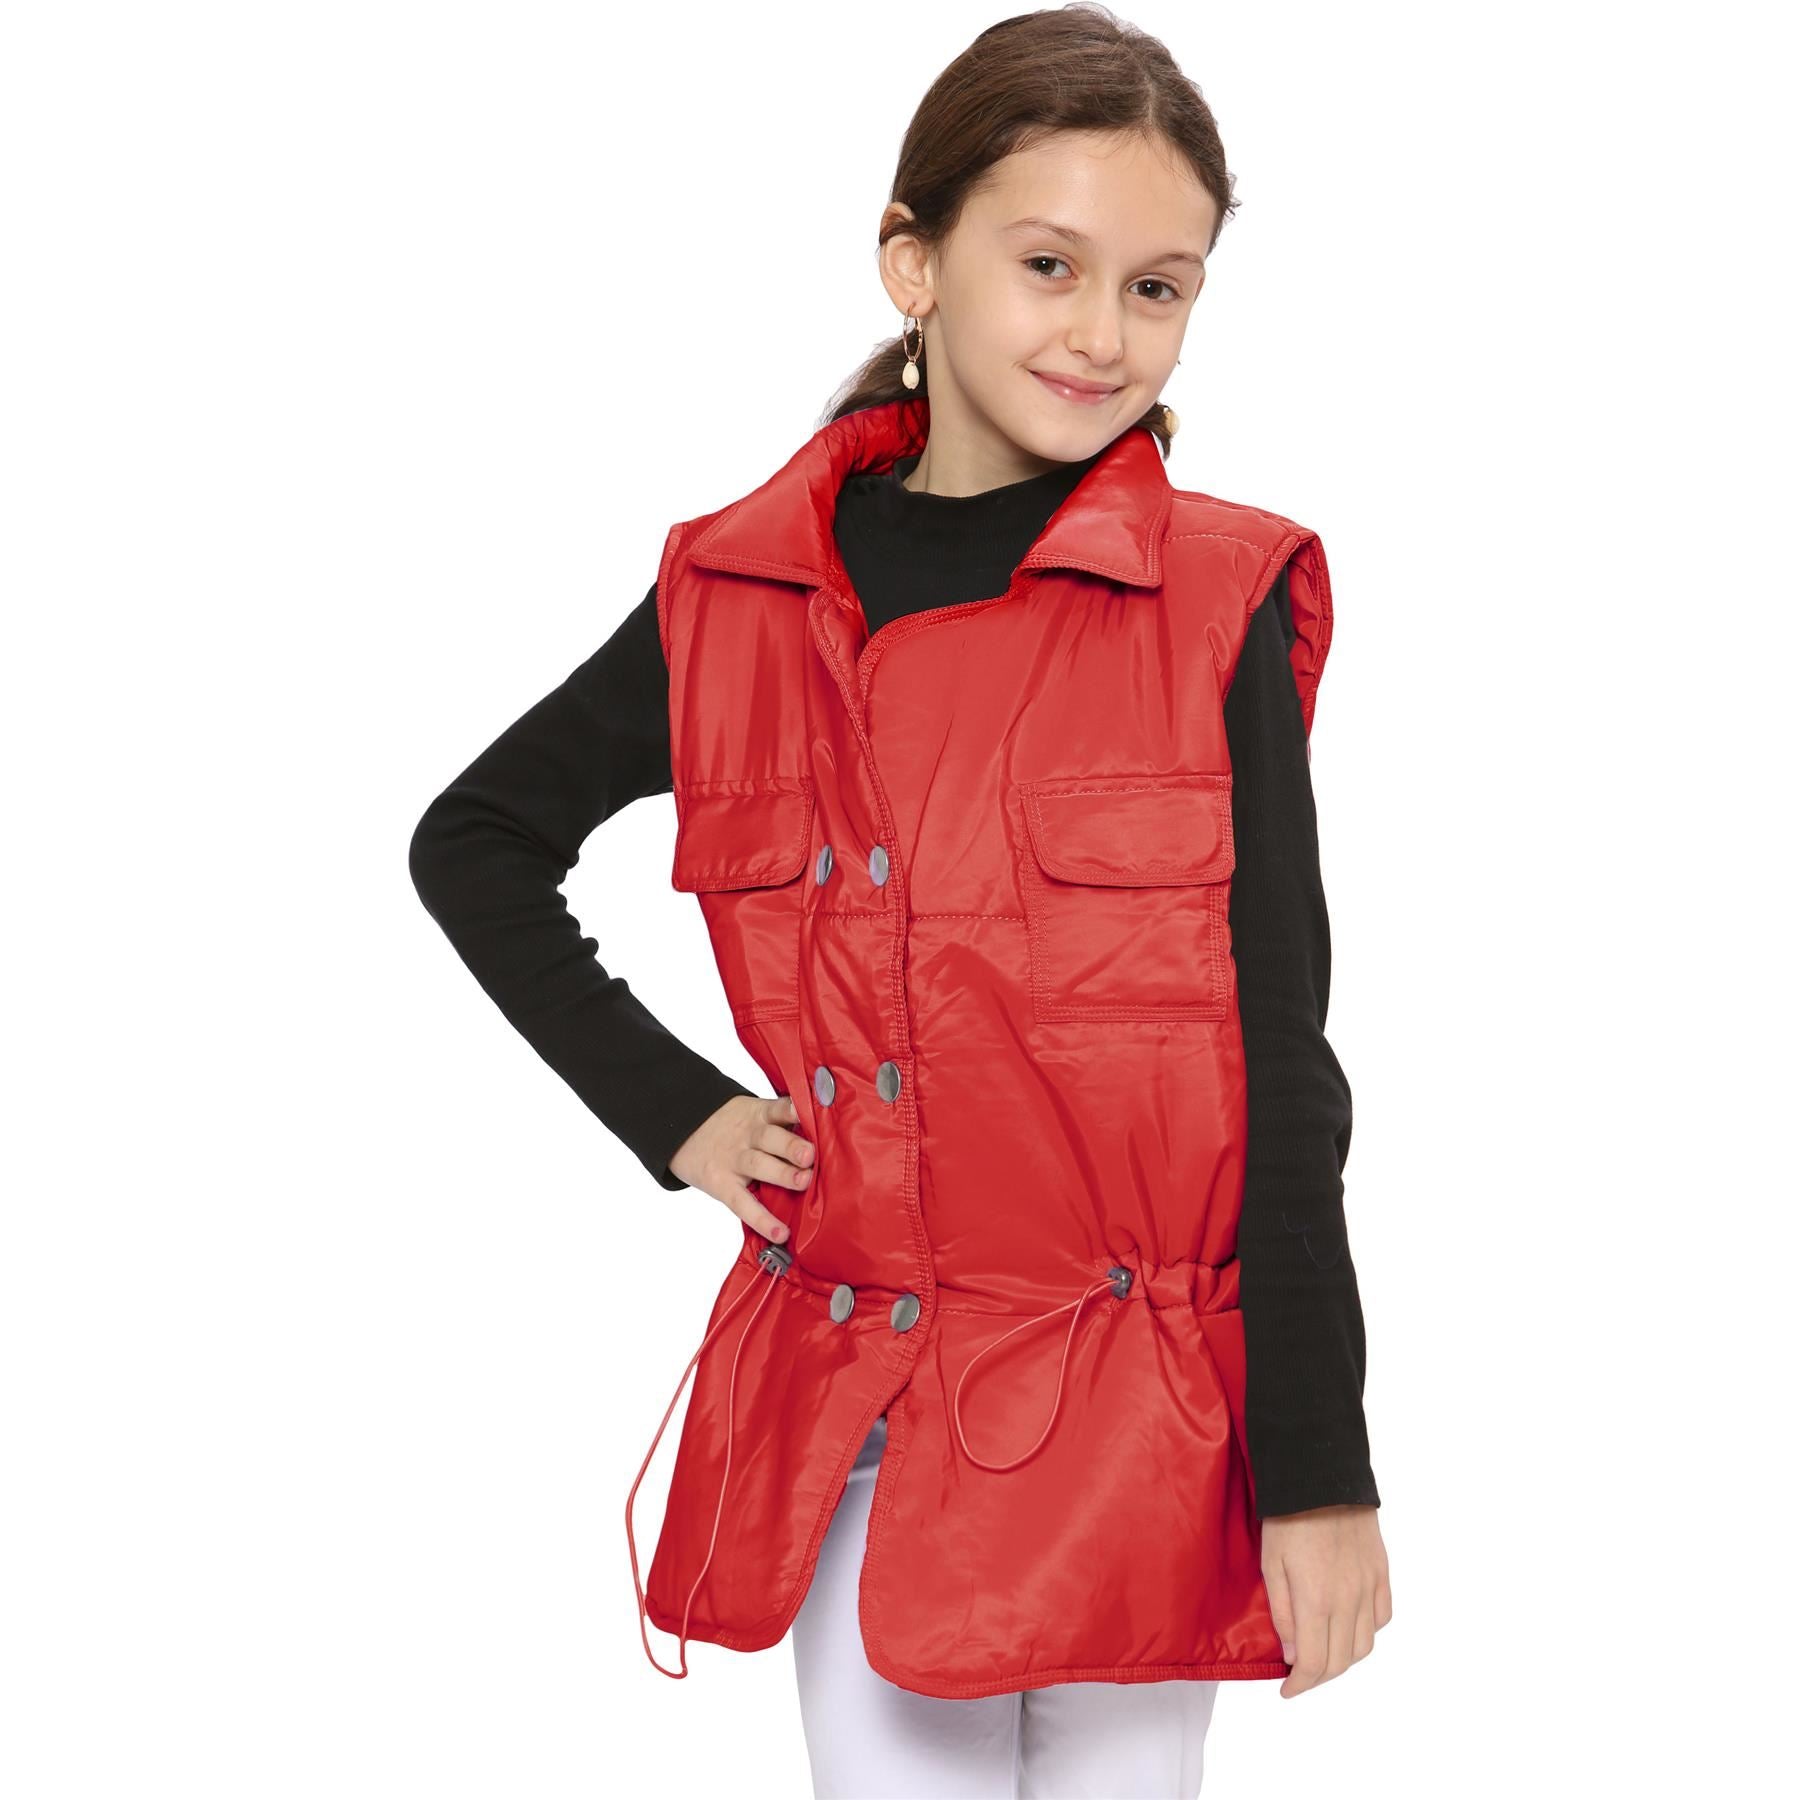 Kids Girls Red Oversized Style Sleeveless Jacket